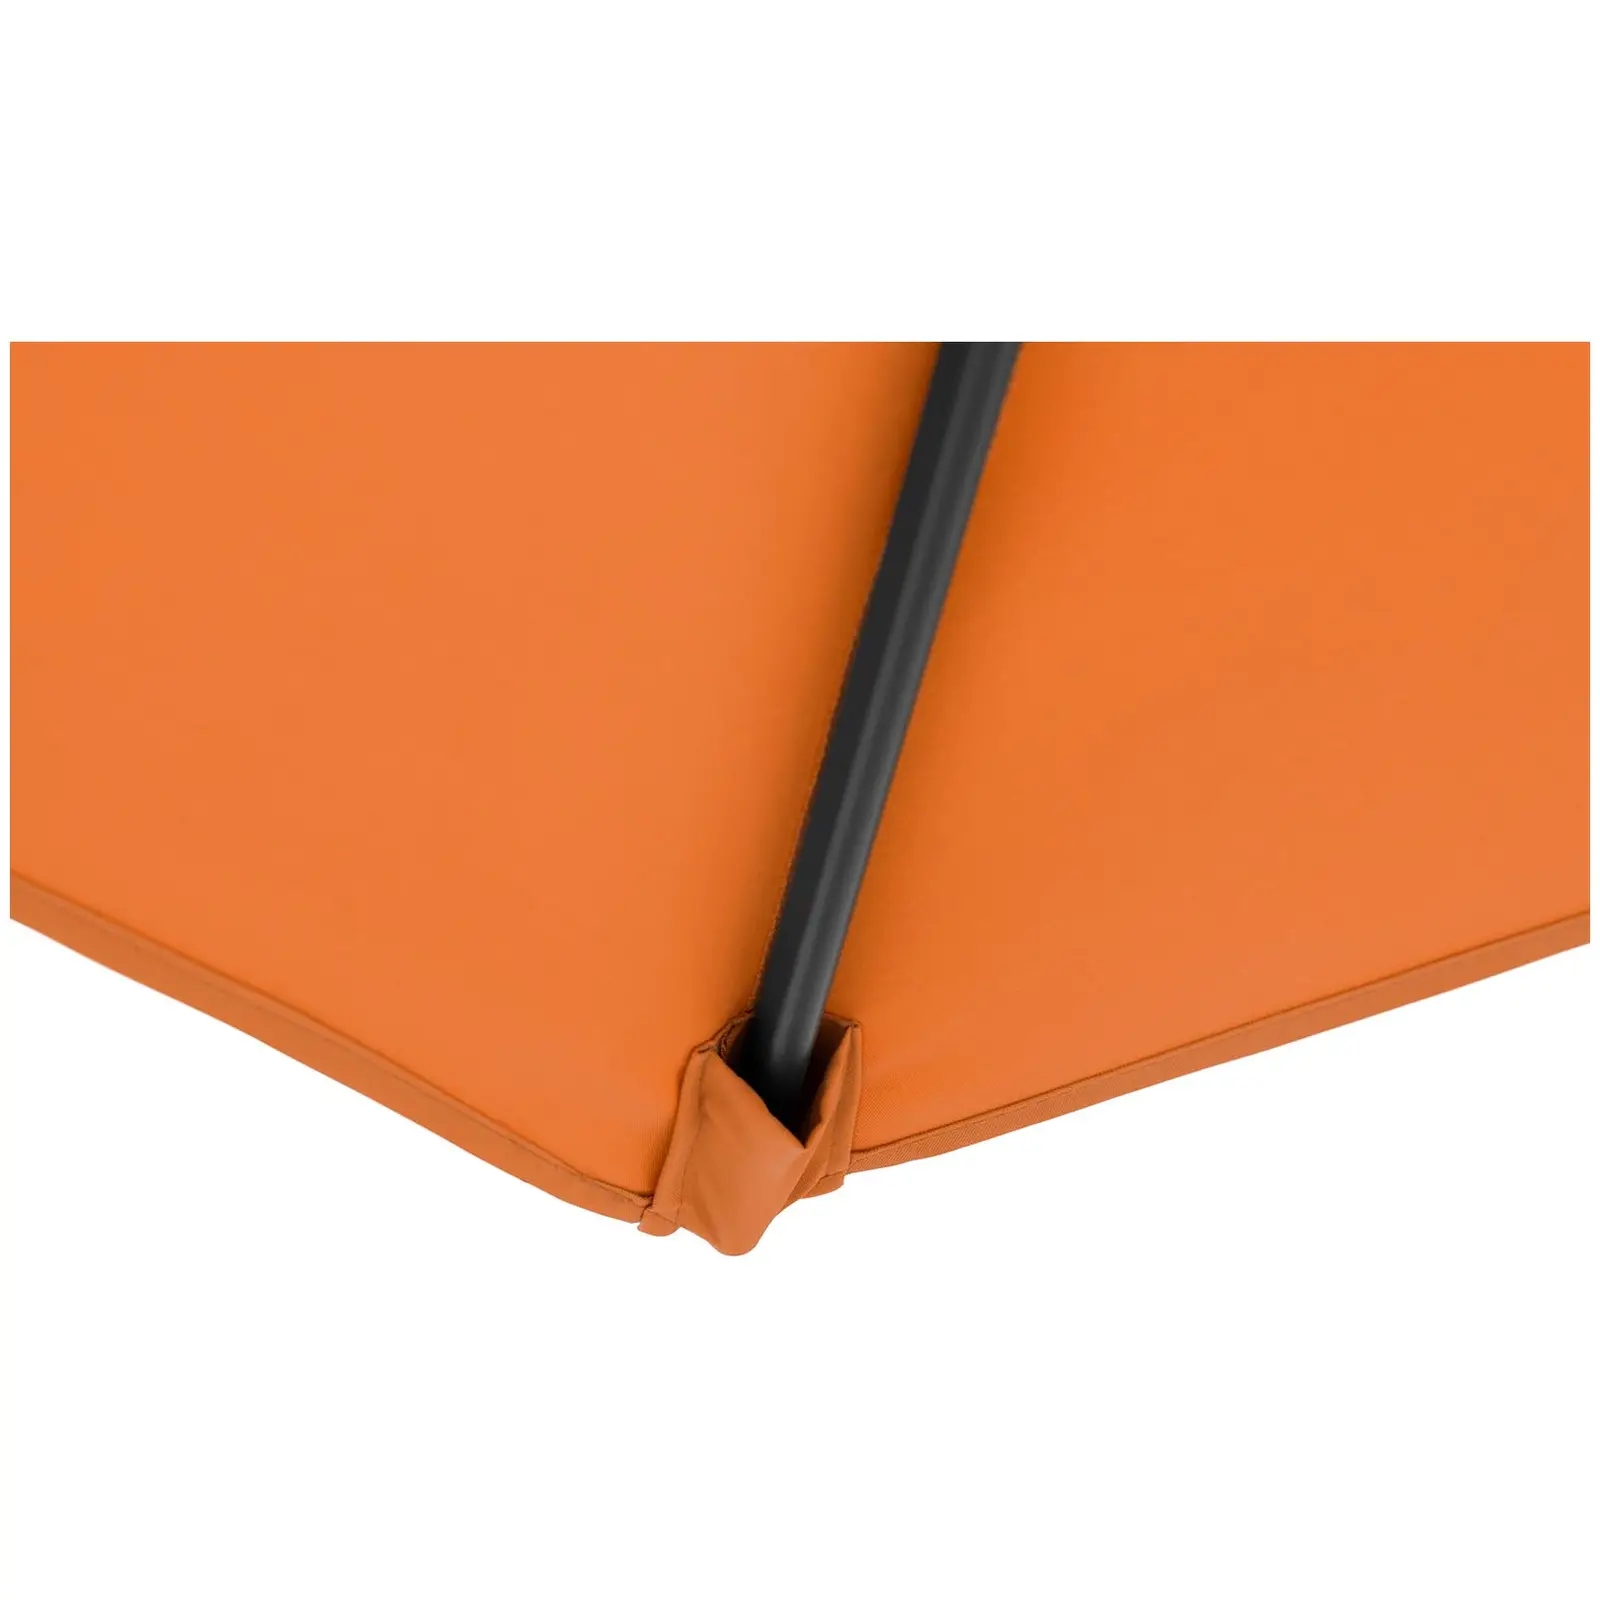 Andrahandssortering Hängparasoll - orange - runt - Ø 300 cm - kan lutas